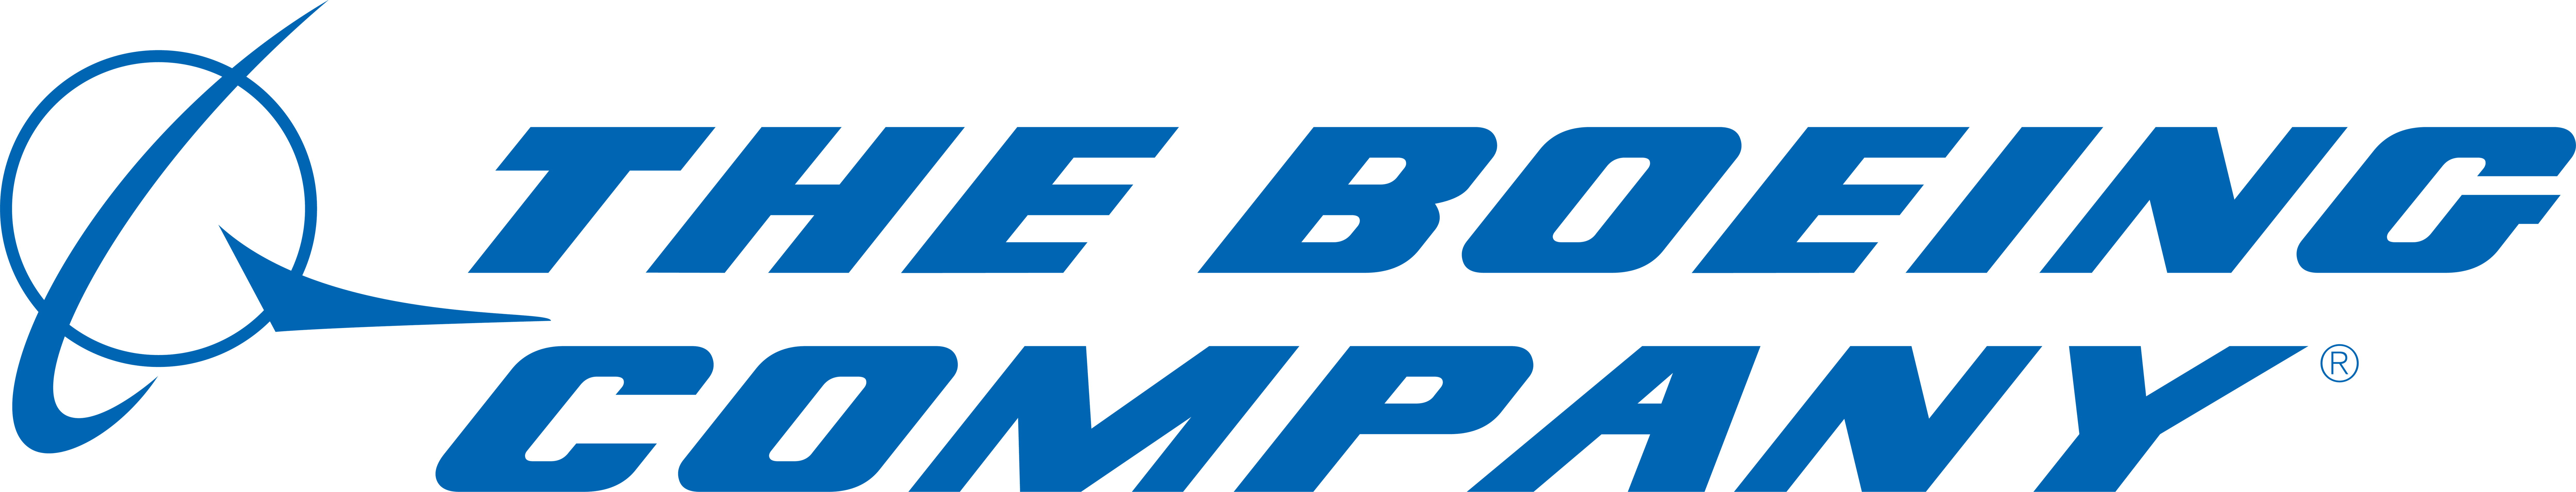 Boeing Logo PNG Image